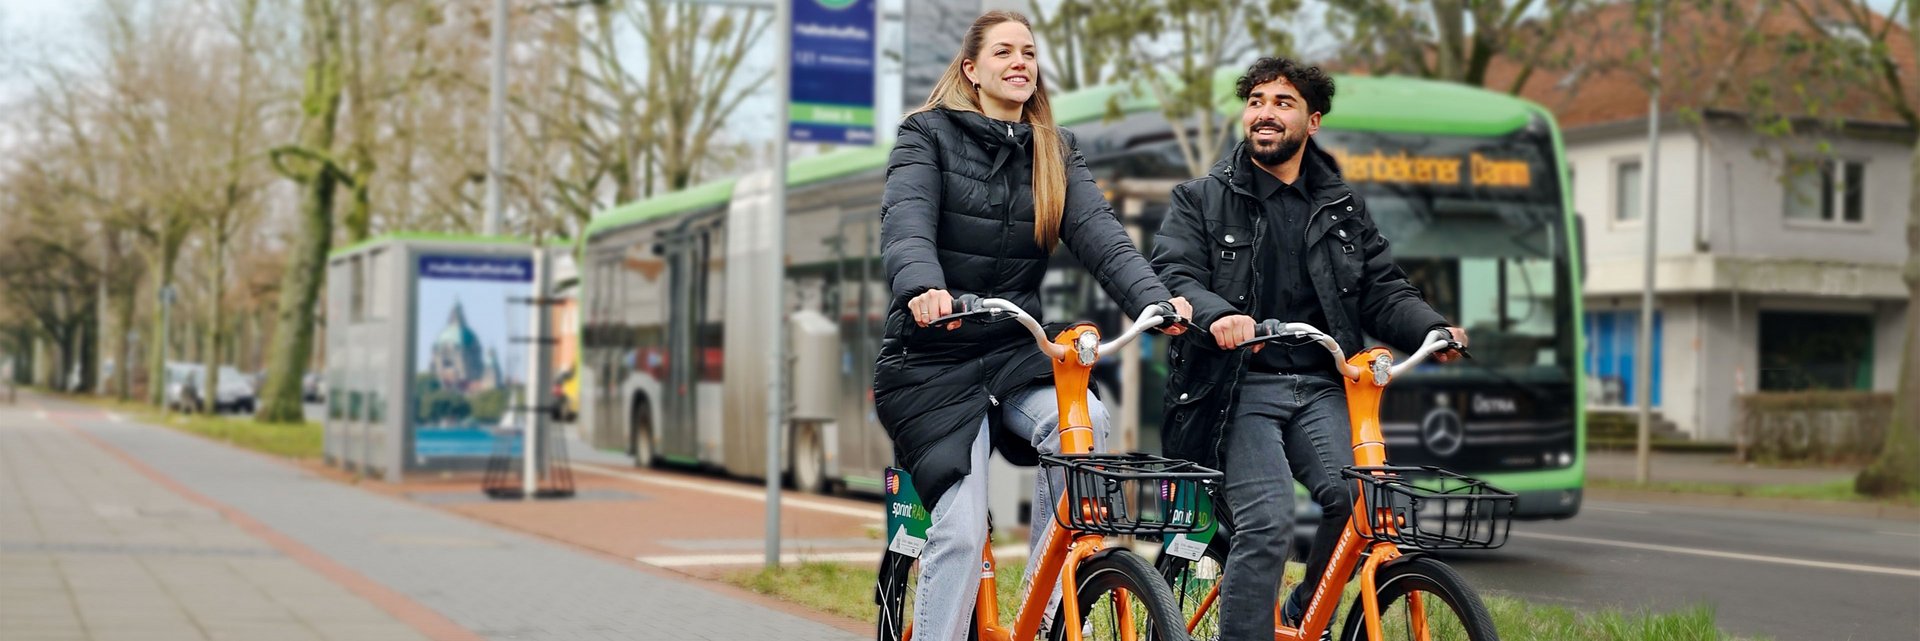 Coverbild des GVH journals 01.2024: Zwei Personen fahren jeweils auf einem orangenen Fahrrad an einer Bushaltestelle vorbei.